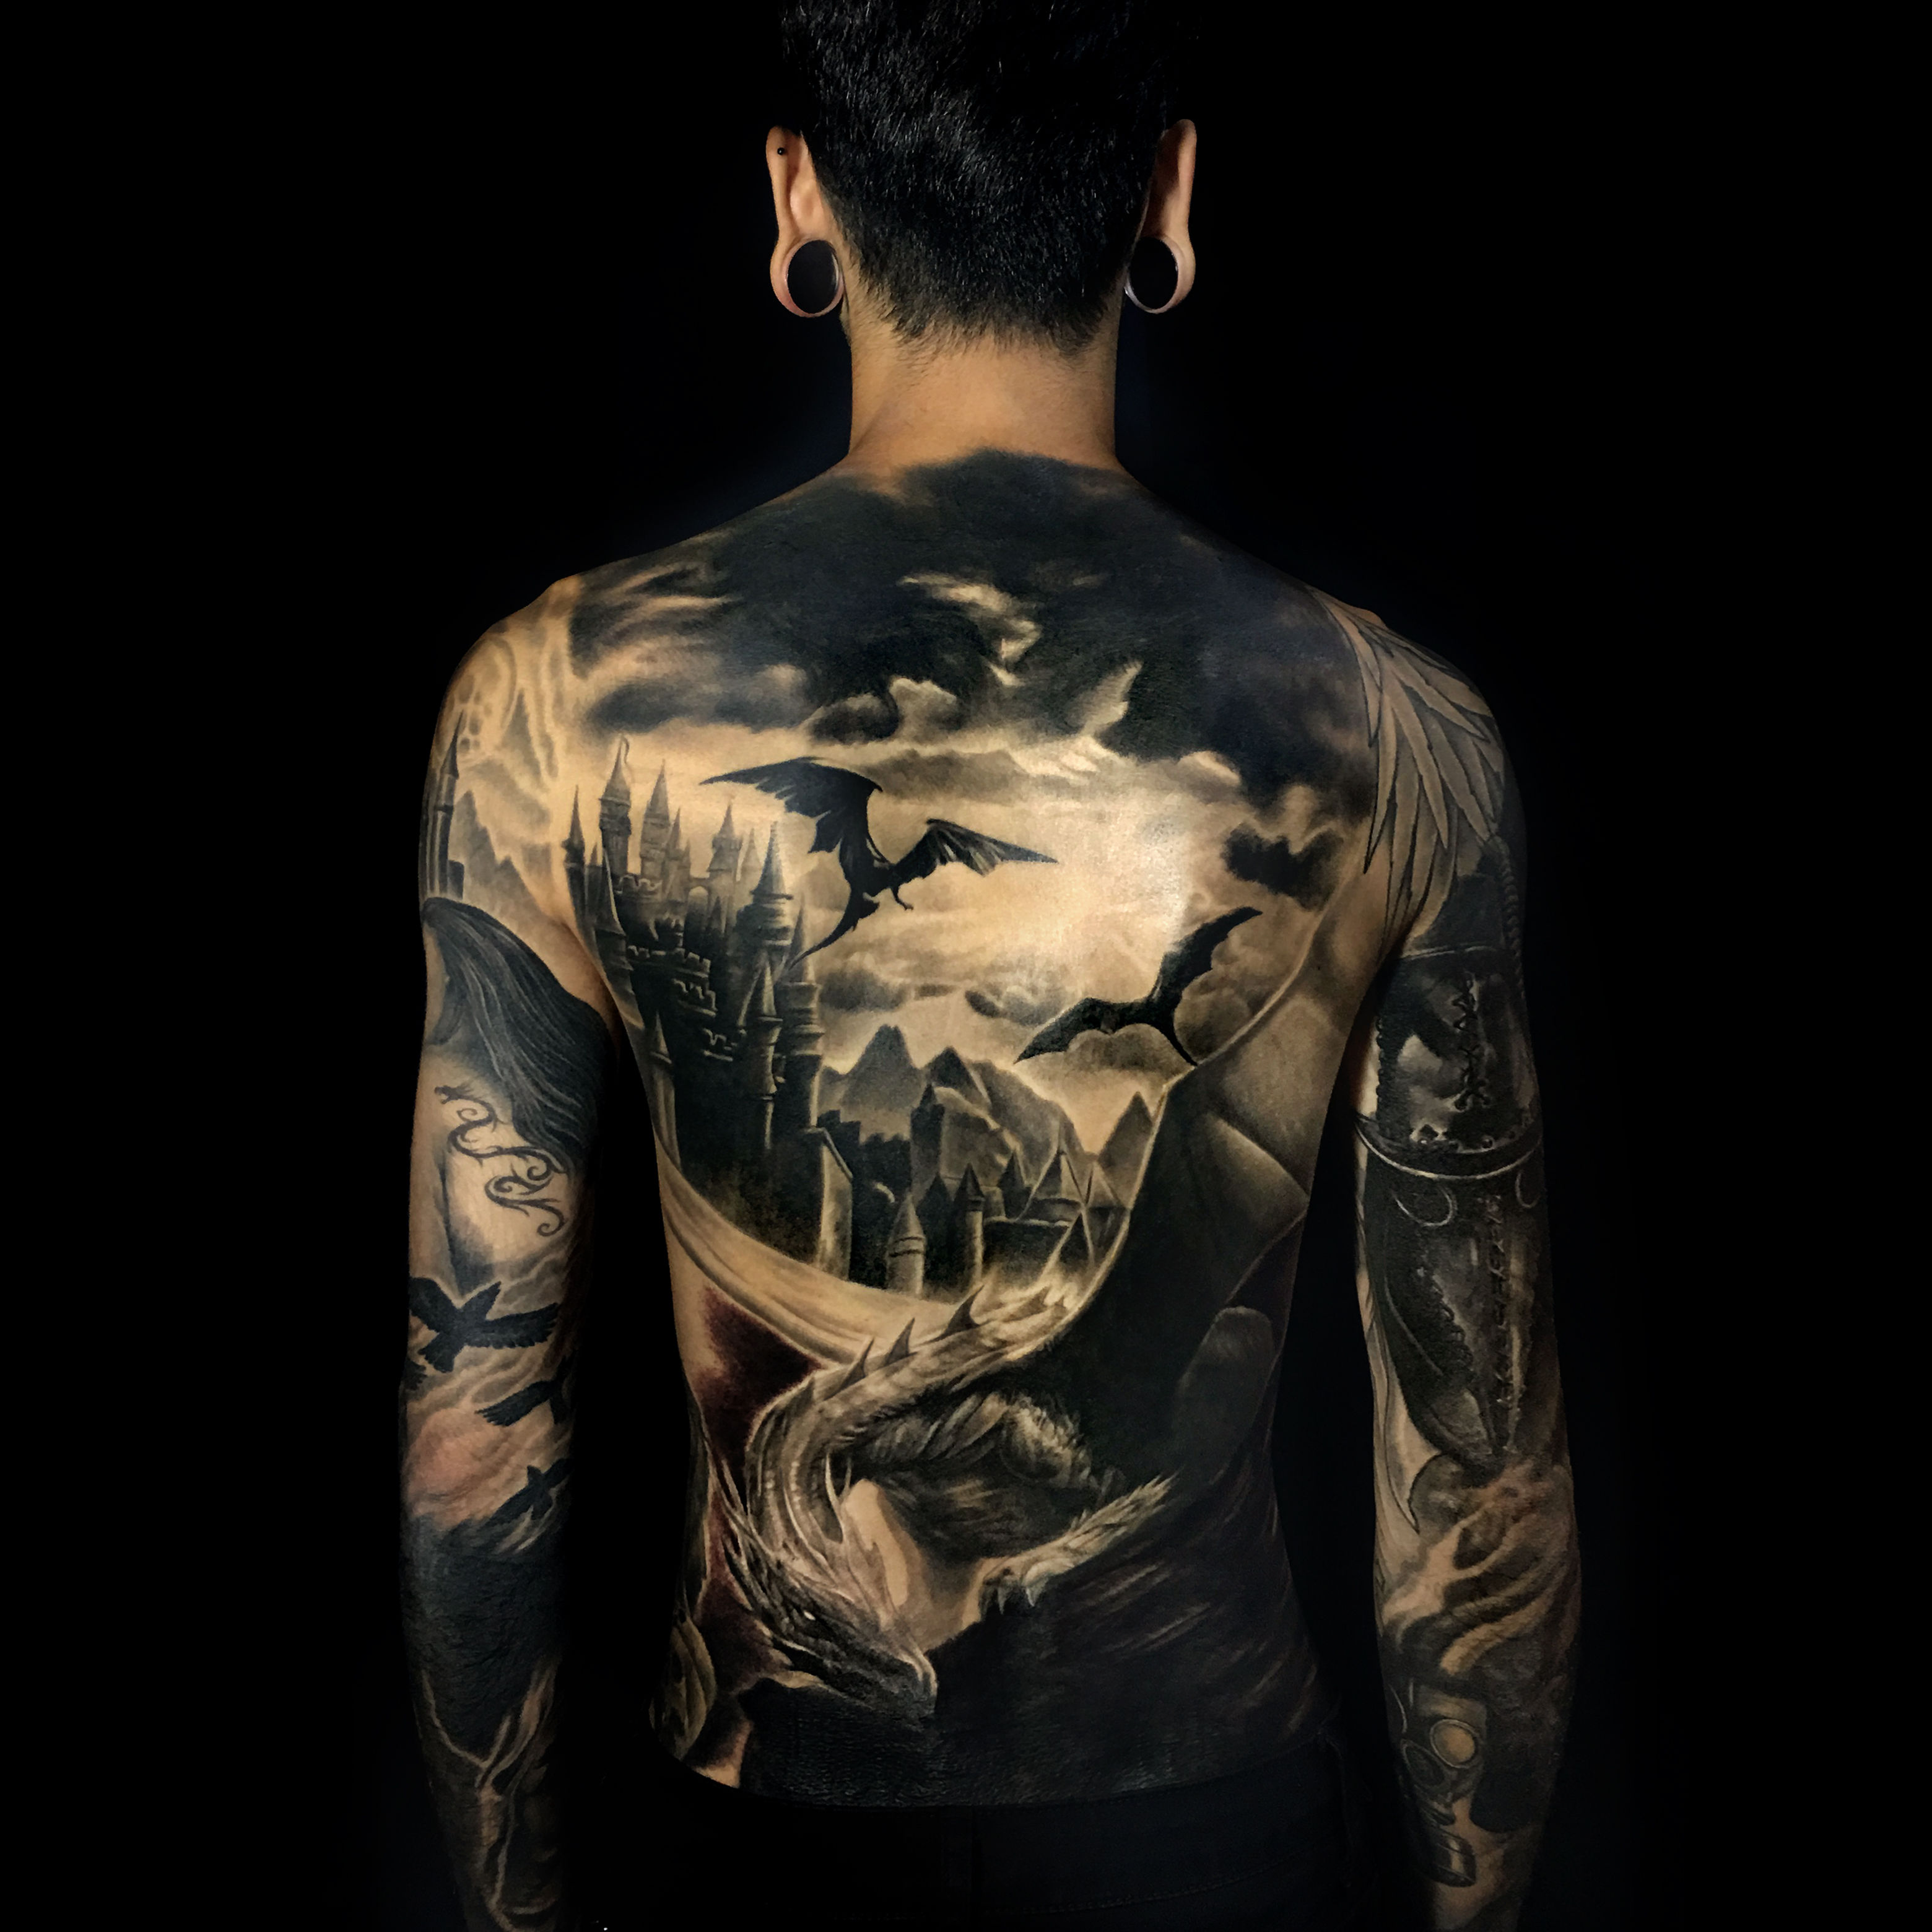 GRIND Tattoo Studio  Thank you Francesco tattoo tattooedtattedtatteduptatuaggiotatuatoriitalianitigretigertattooitaliatattooitalyitaliantattooartisttraditionaltattoooldschooldaggerinkinkedinkedupinkartart artistartisticarte  Facebook